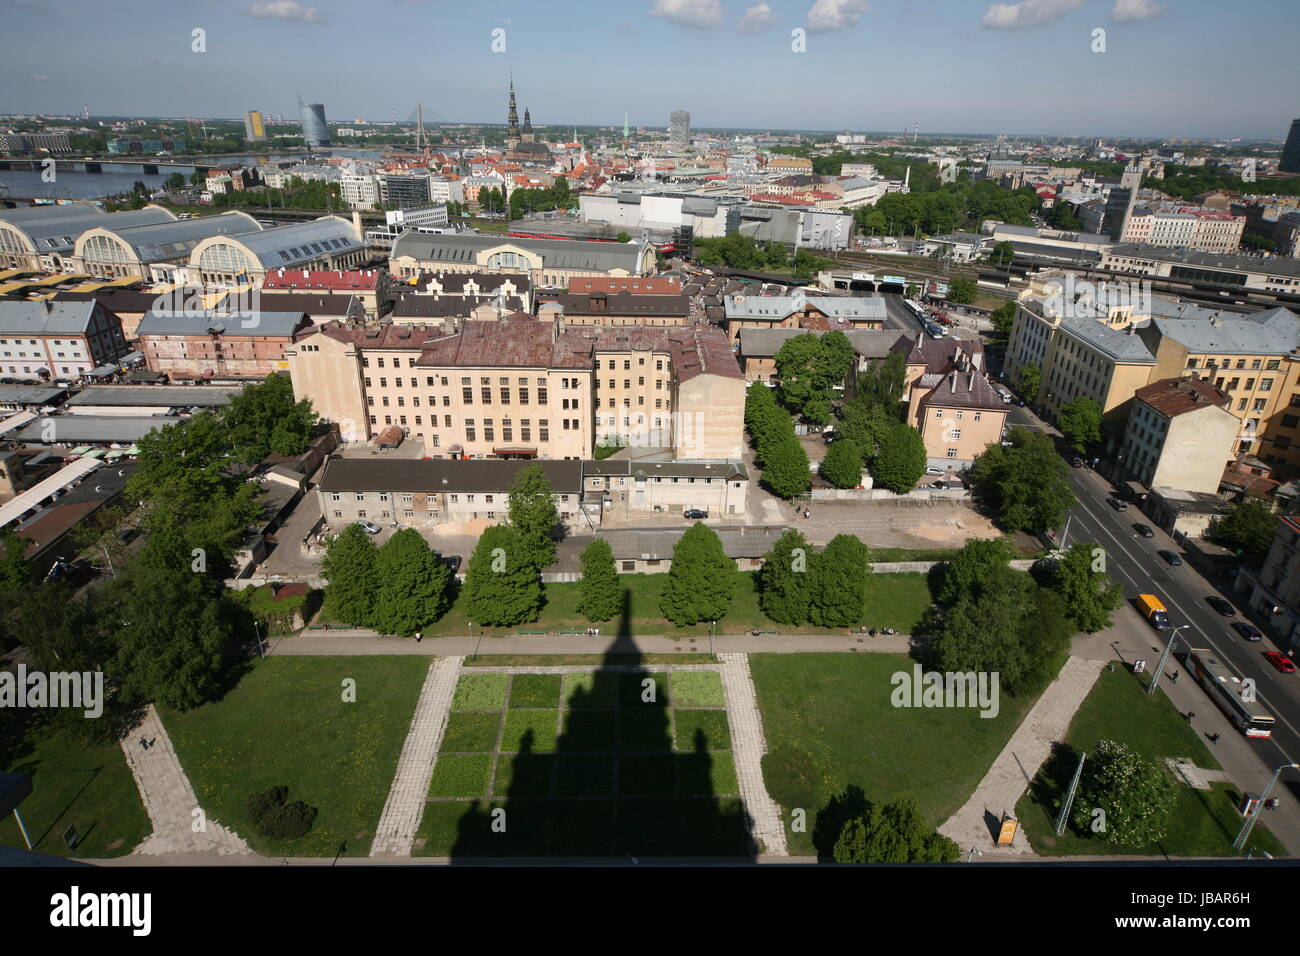 Die Altstadt von Riga aus Sicht der Aussichtsterasse des Sozialistischen Hochhaus Akademie der Wissenschaften im Stadtteil Little Moskow in Riga, Lettland Stock Photo